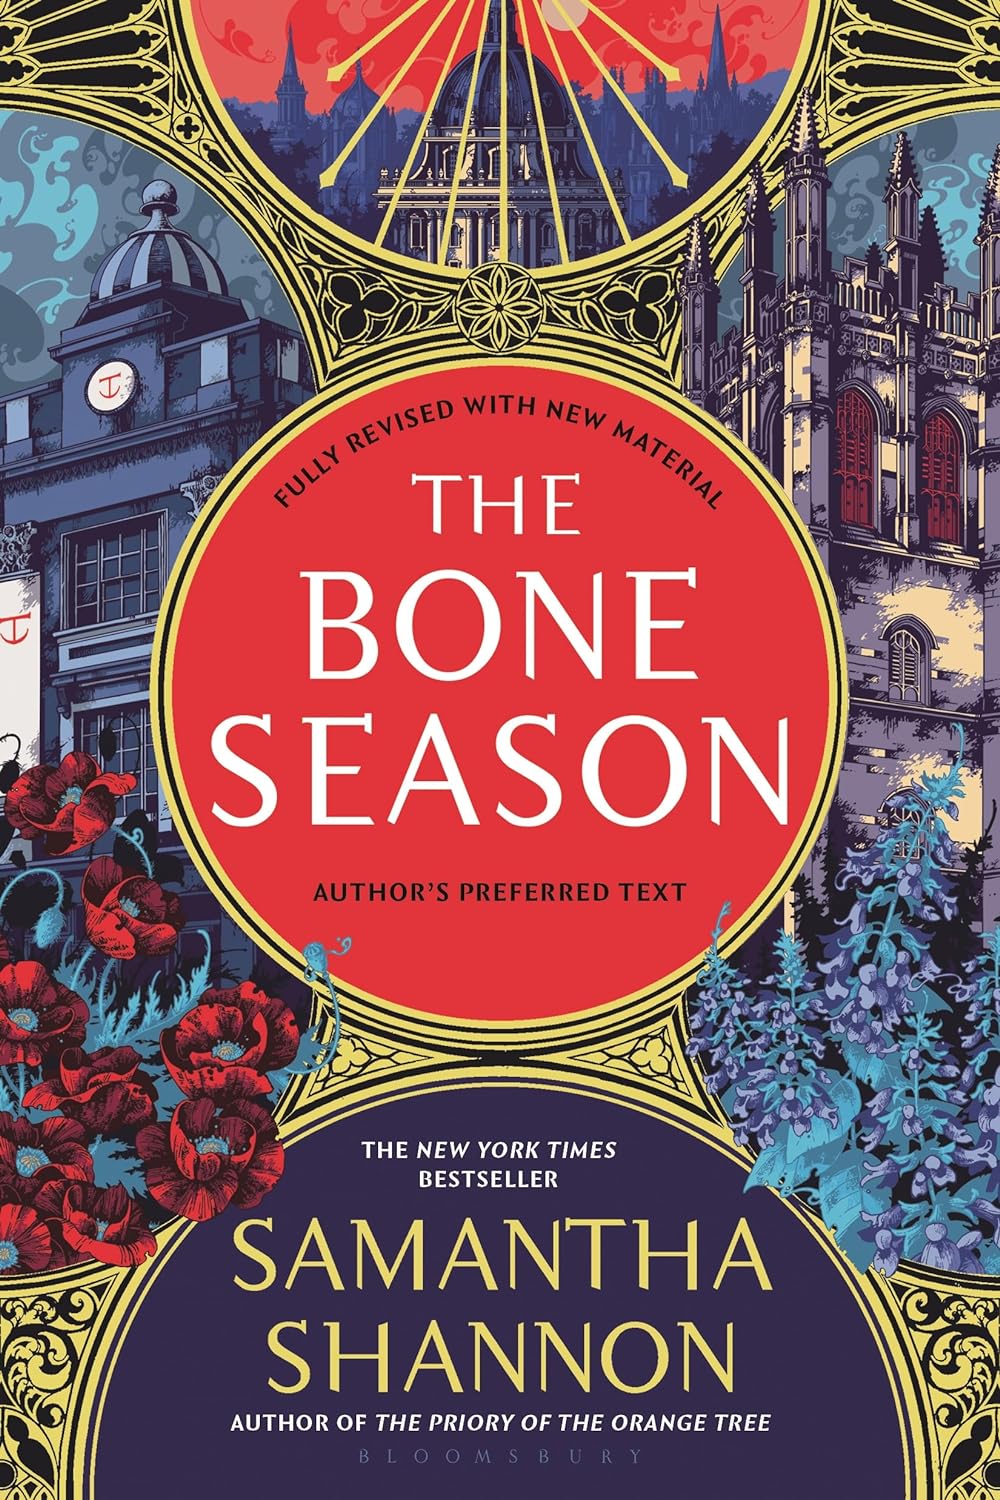 The Bone Season - Samantha Shannon